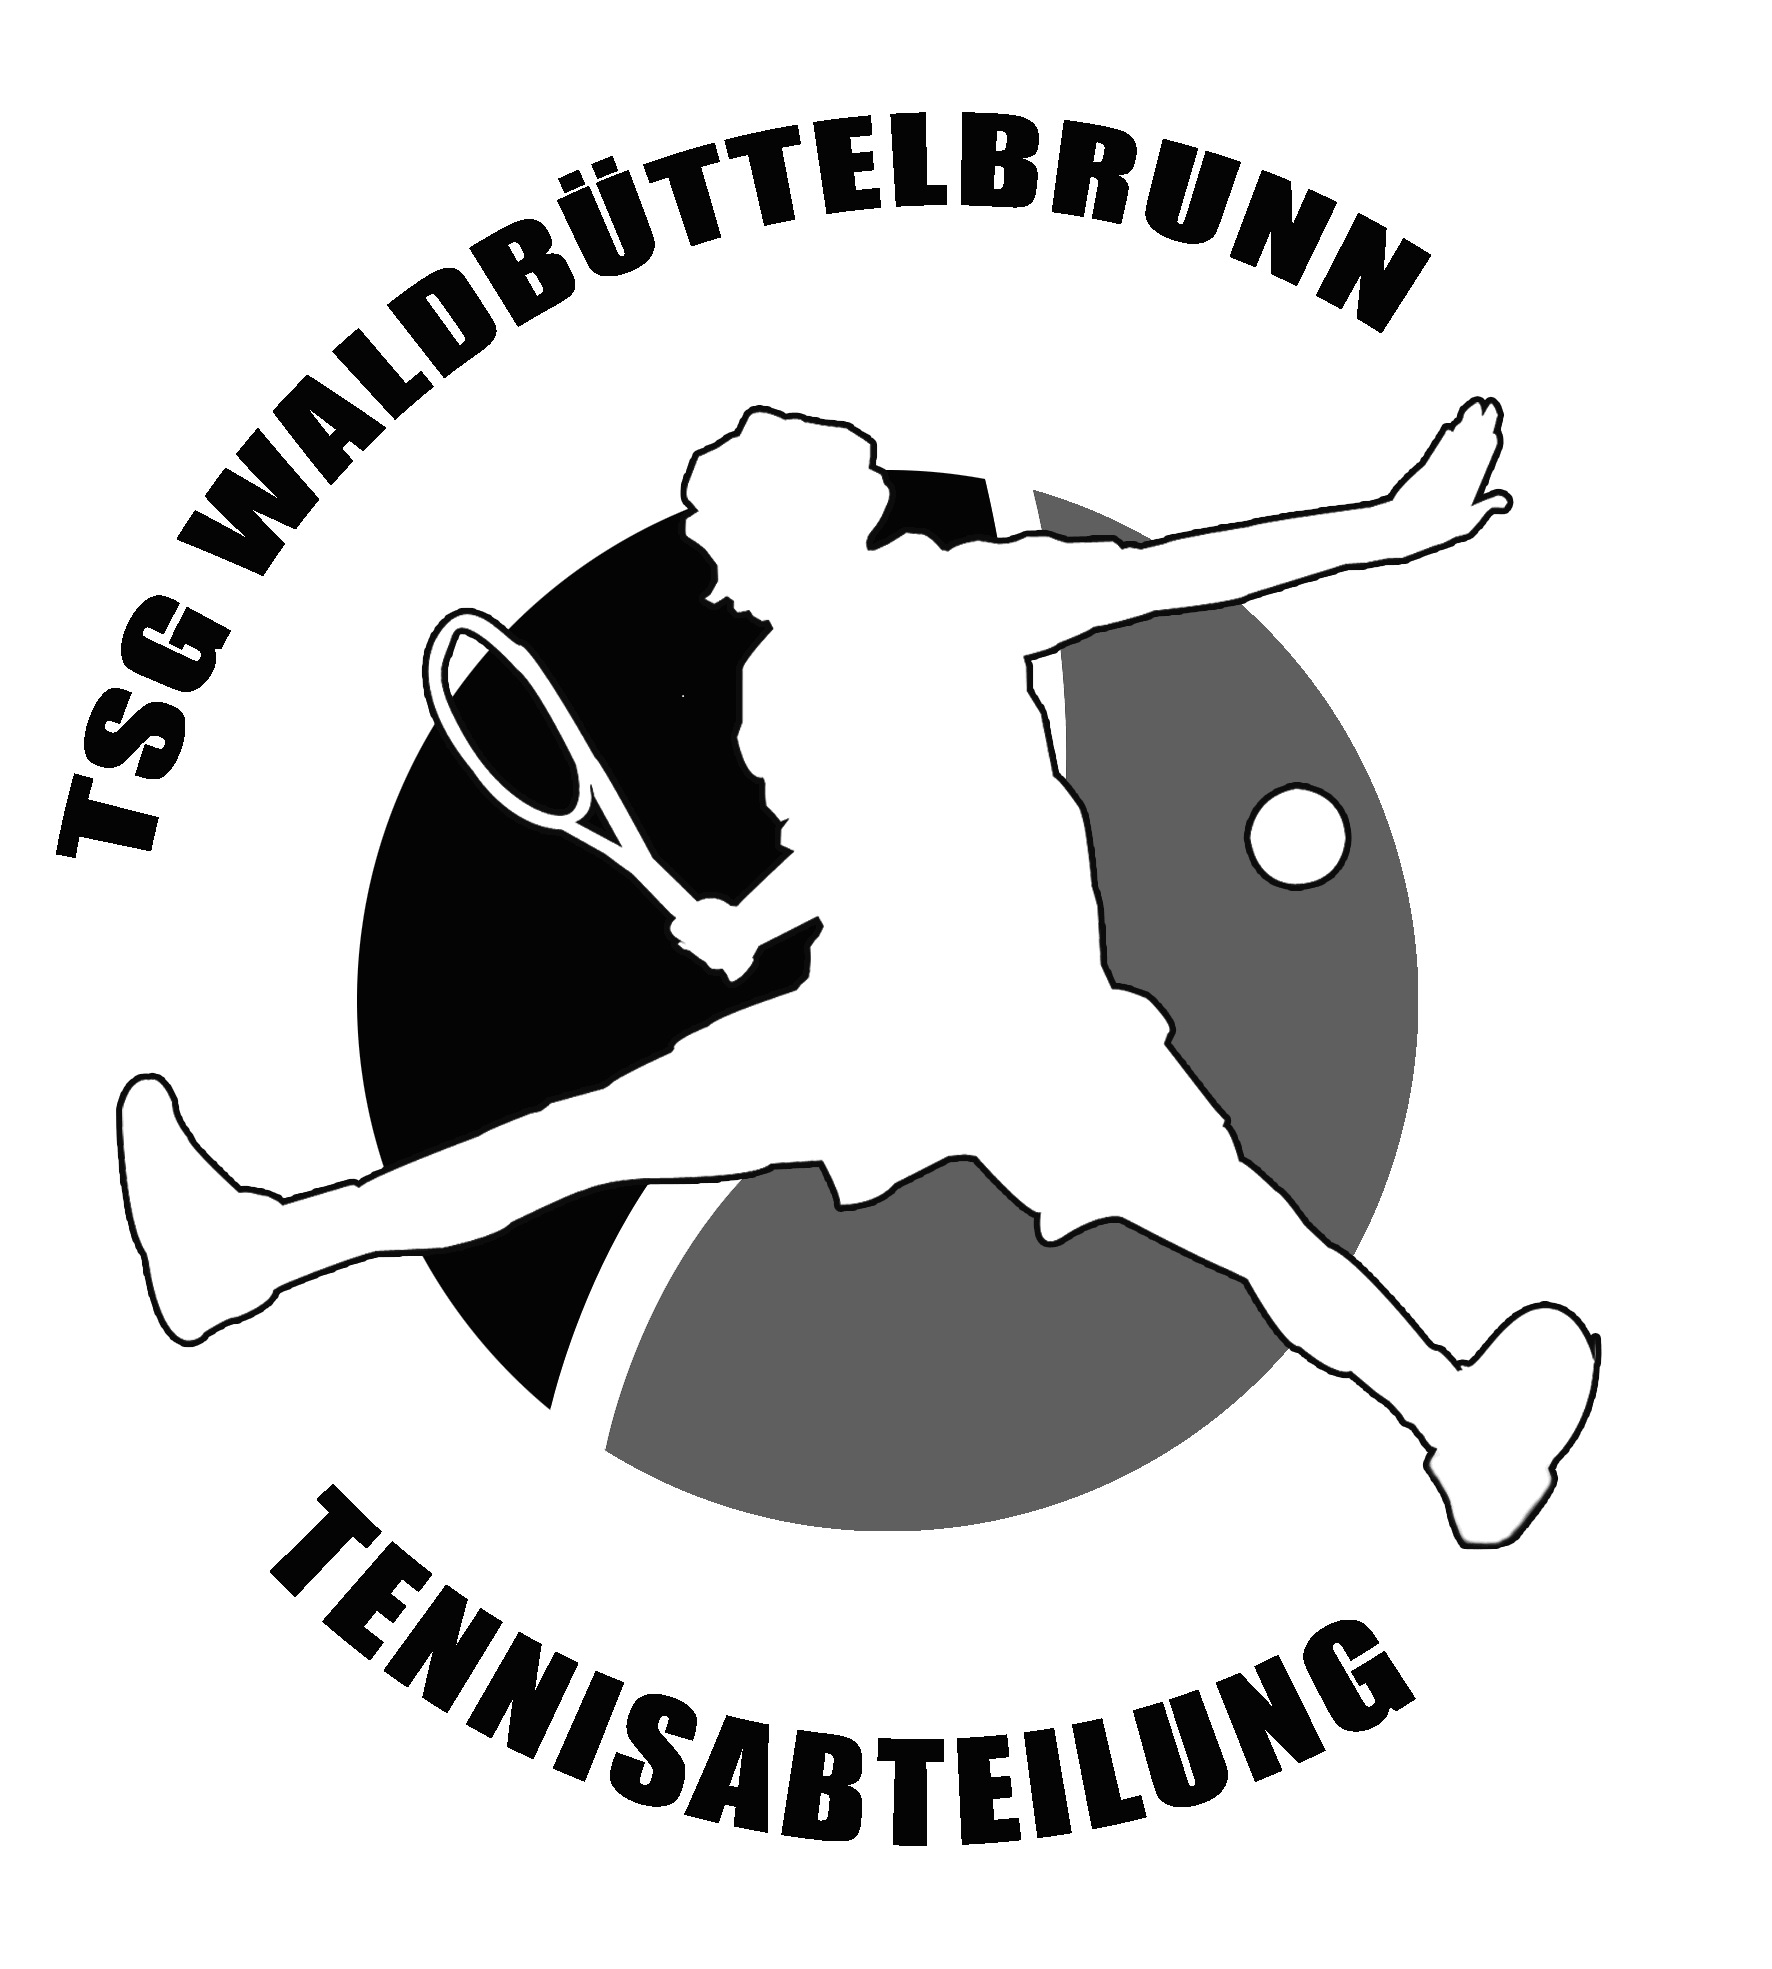 TSG Waldbüttelbrunn